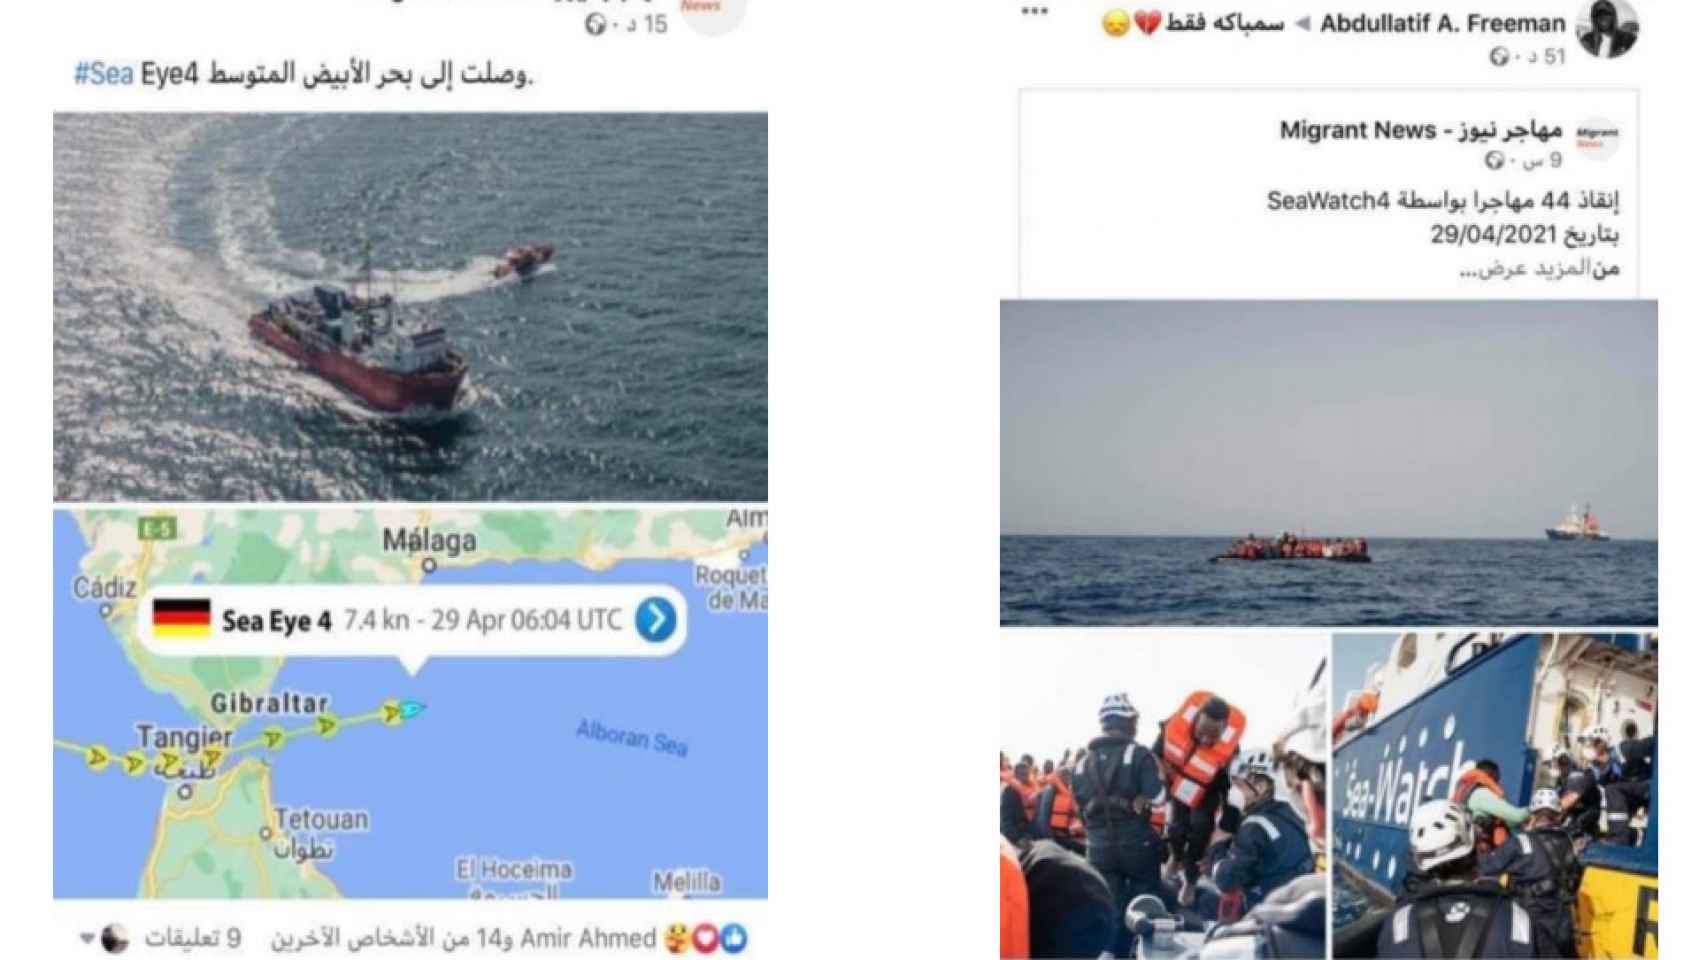 Otros canales que promocionan la inmigración ilegal desde el norte de África también utilizan las imágenes de rescates del 'Sea Eye 4' como gancho